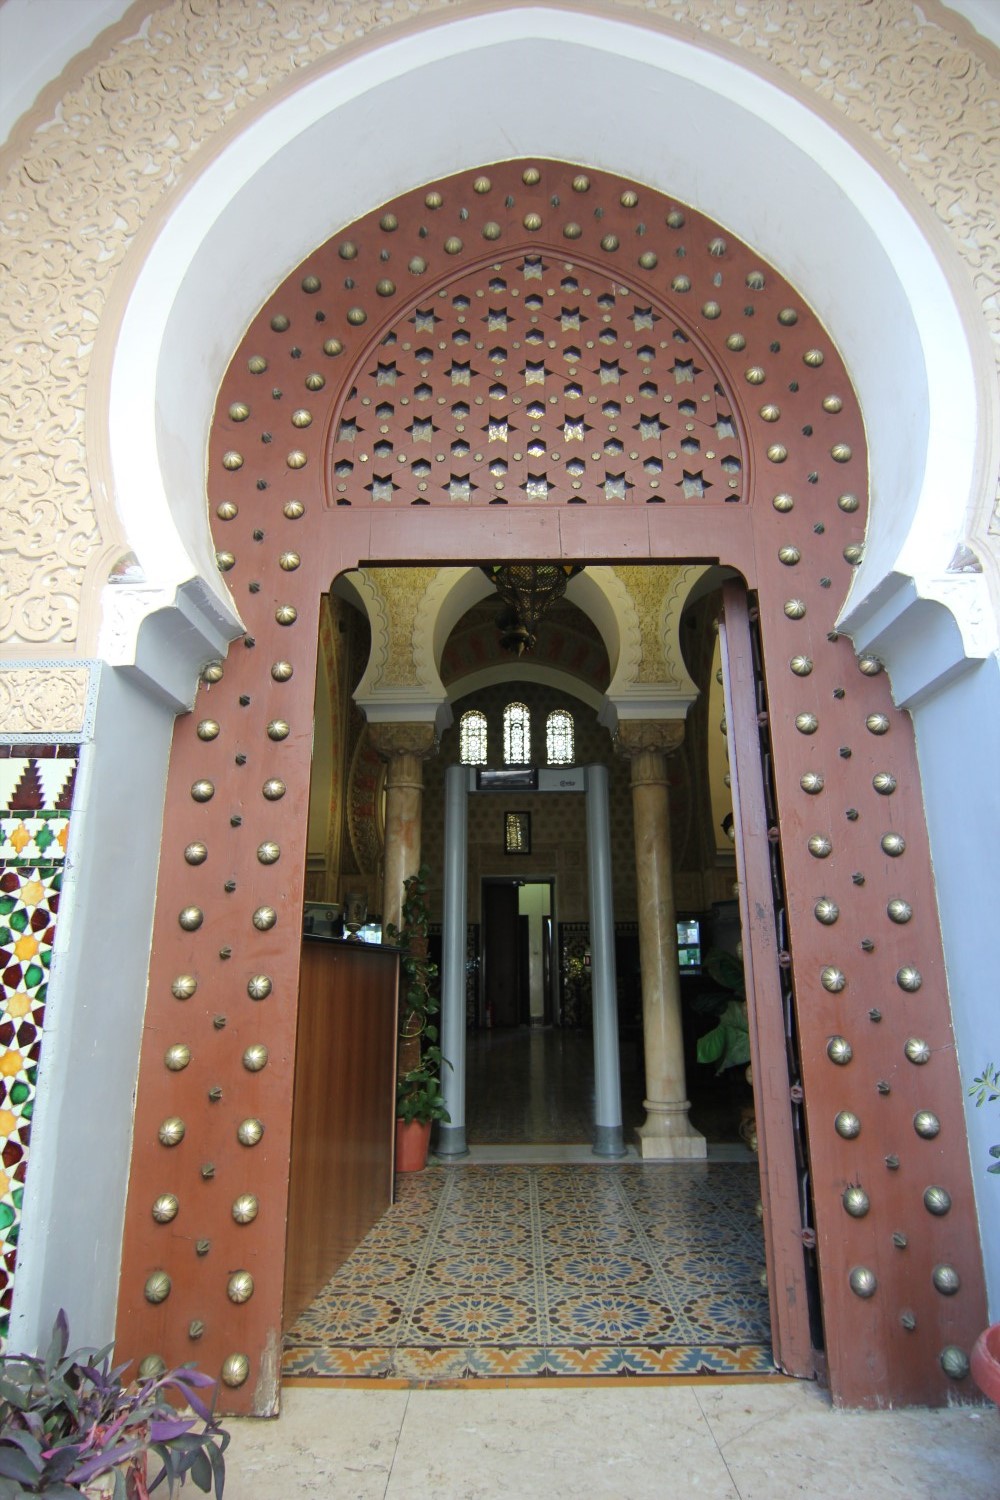 View of the wooden door